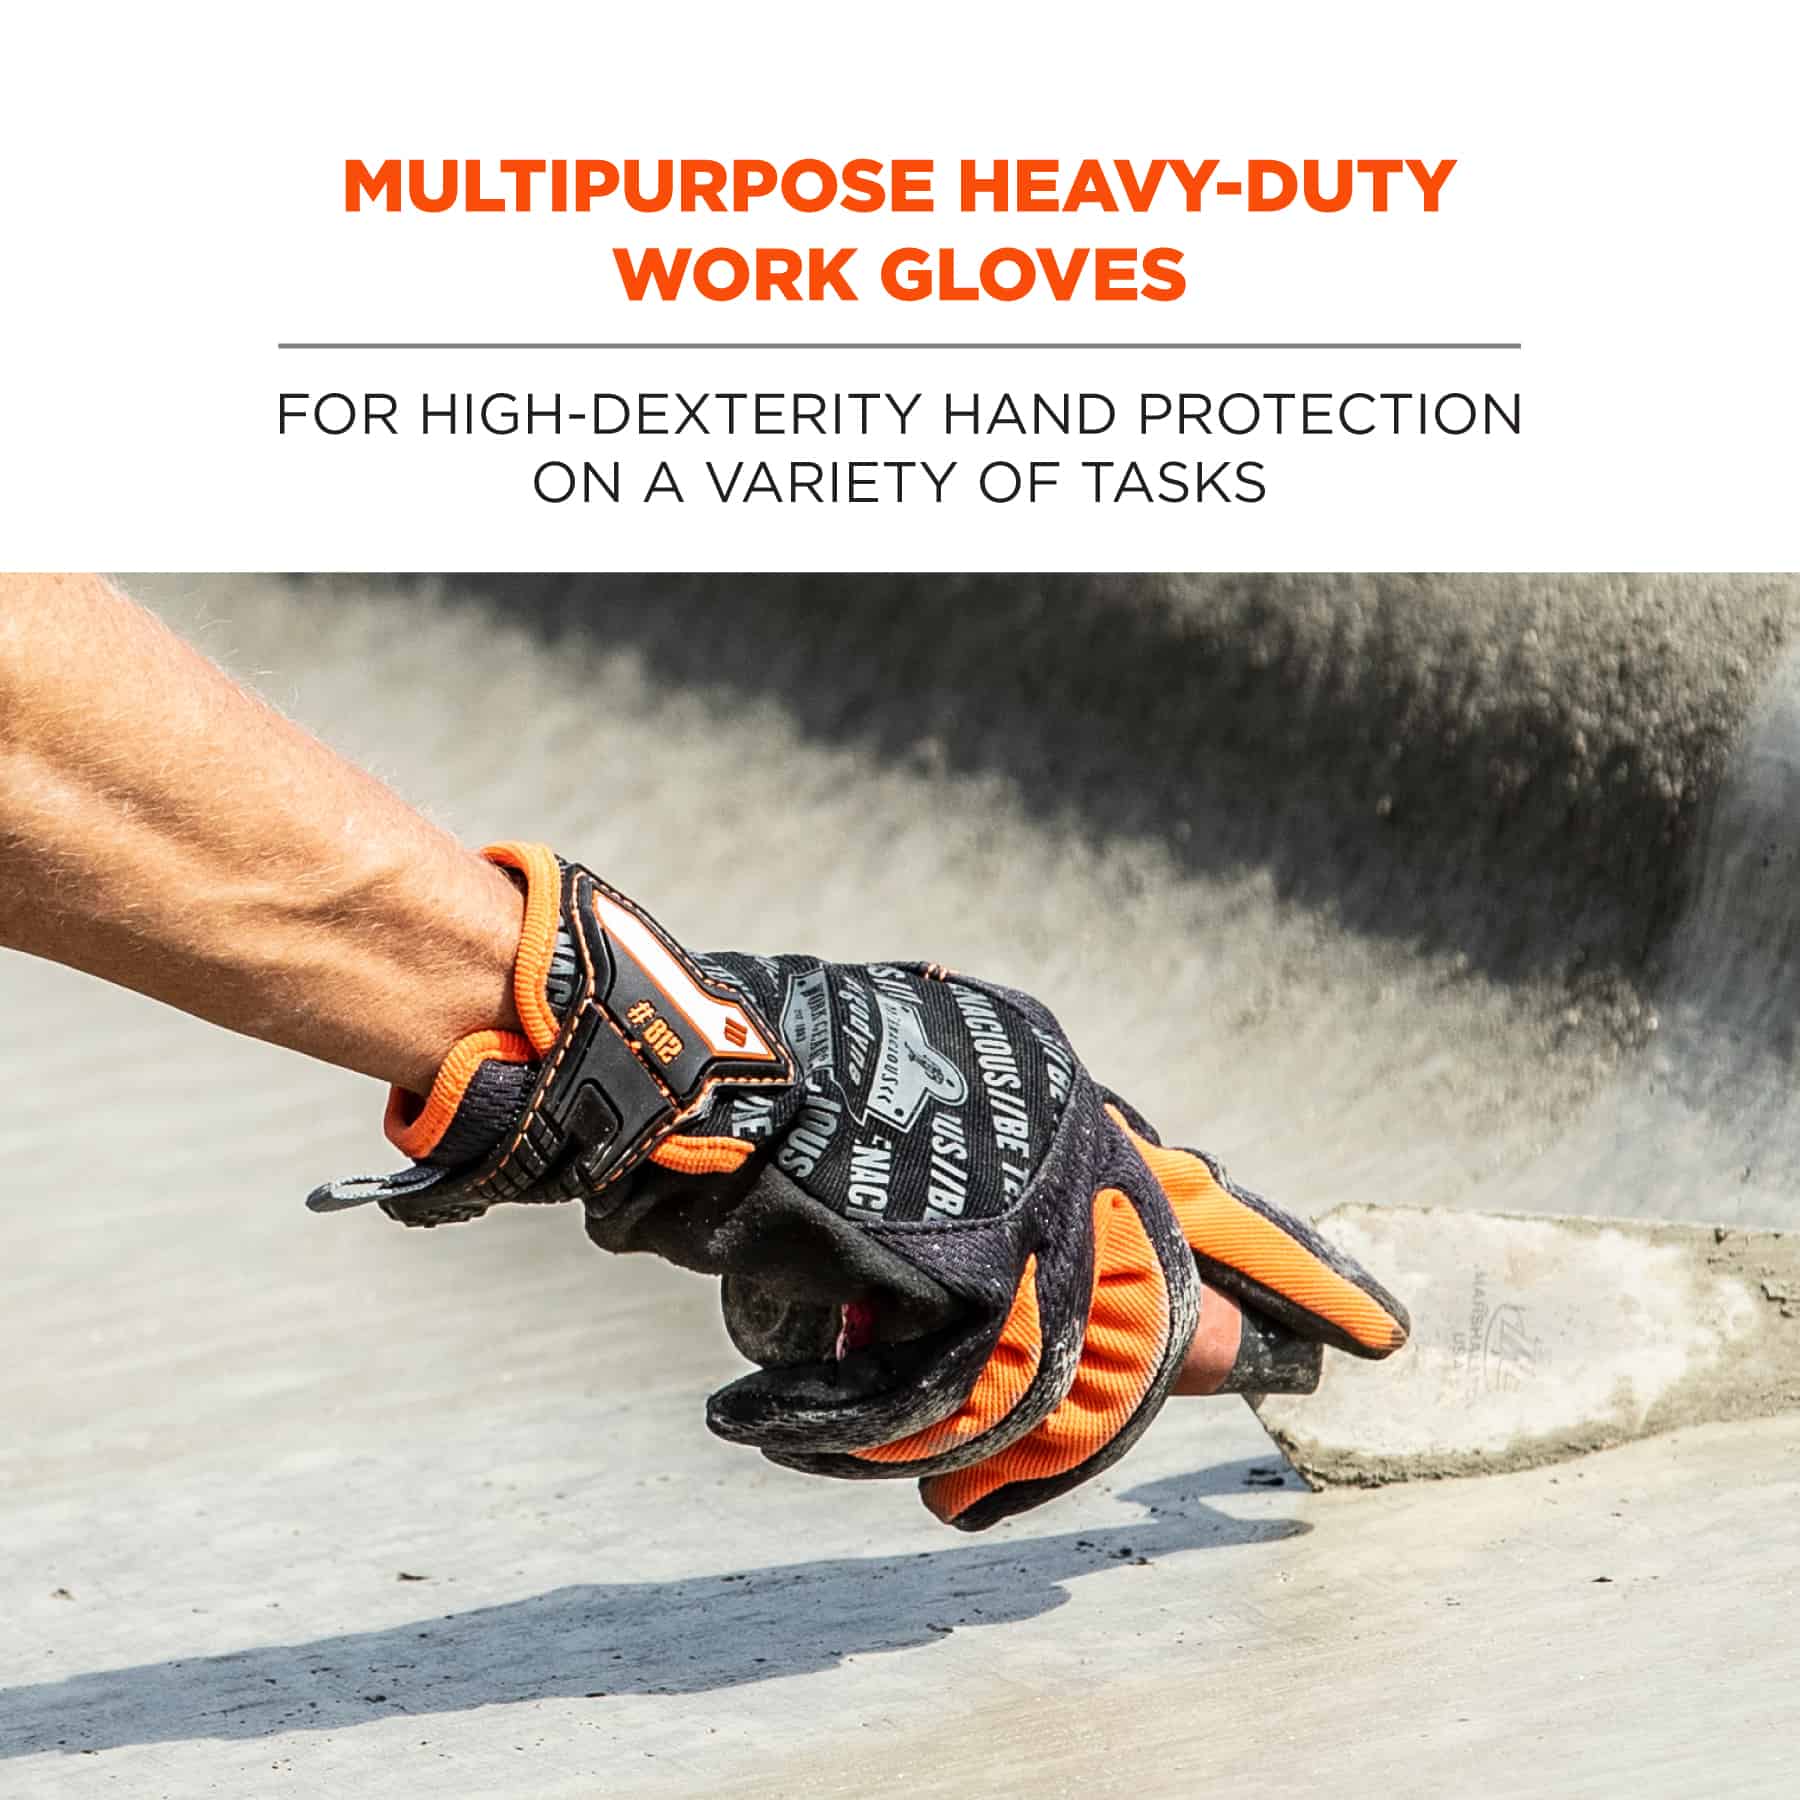 https://www.ergodyne.com/sites/default/files/product-images/17172-812-standard-utility-gloves-black-multipurpose-heavy-duty-work-gloves.jpg